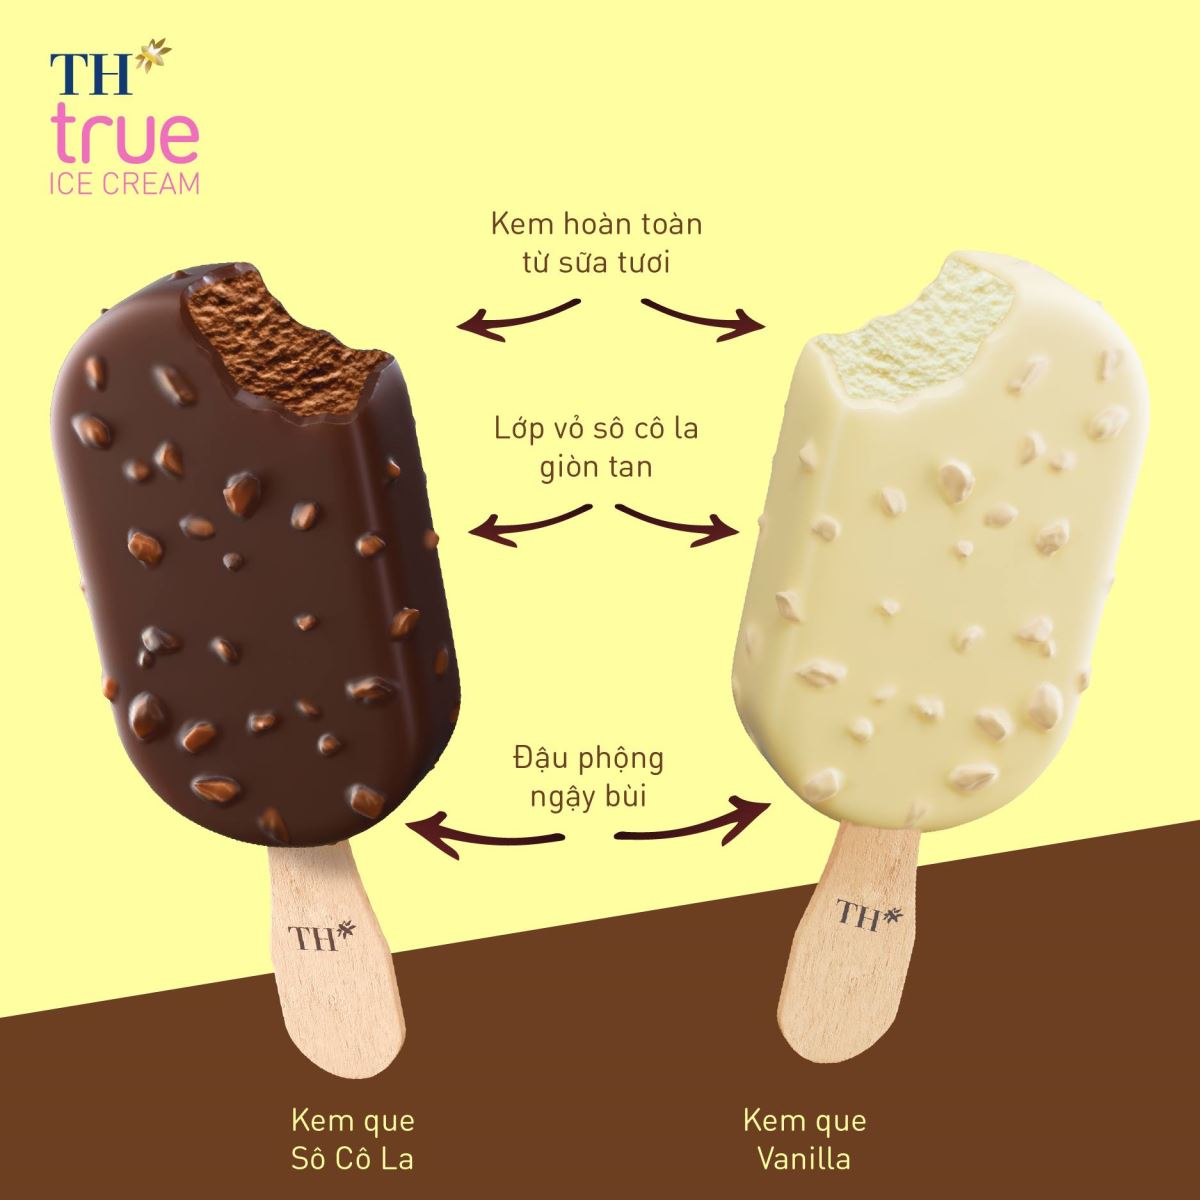 Thưởng thức ngay kem que TH với lớp vỏ giòn tan - chất kem sánh mịn